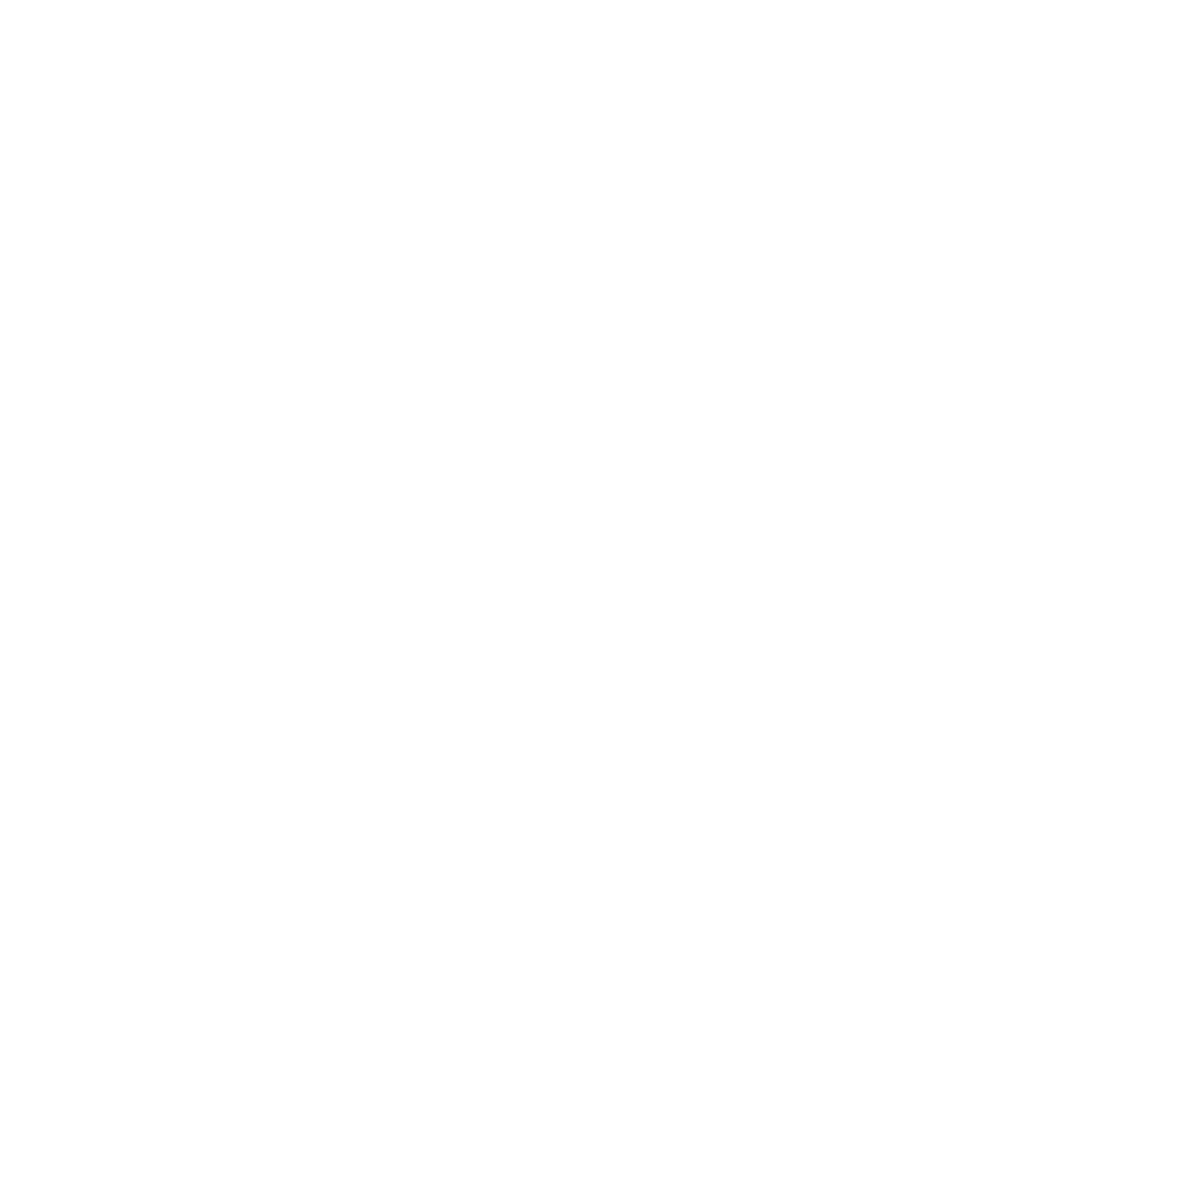 ZF Friedrichshafen对其S/4HANA的迁移过渡有了清晰的认识